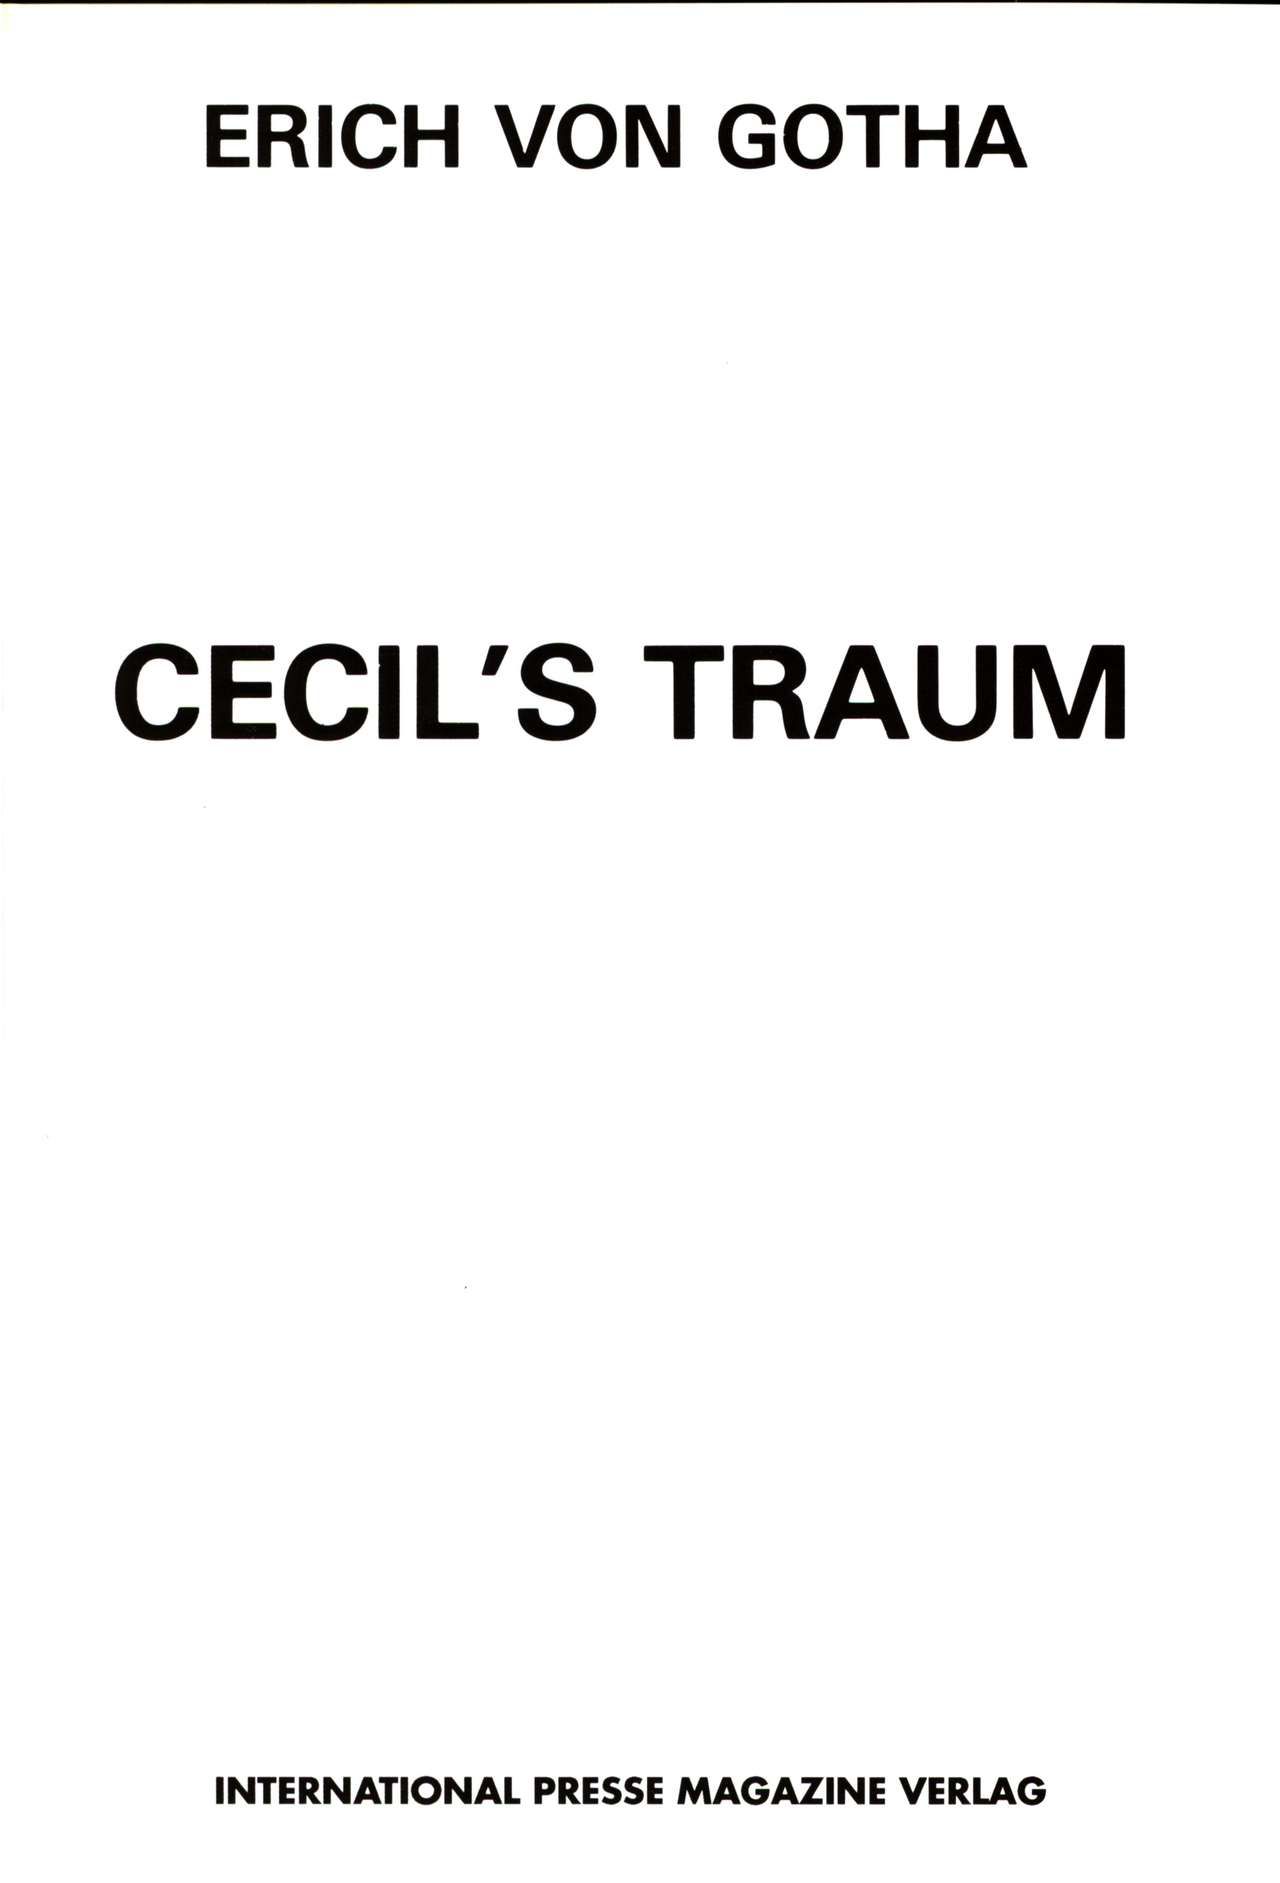 [Erich von Götha] Cecil's Traum [German] 2